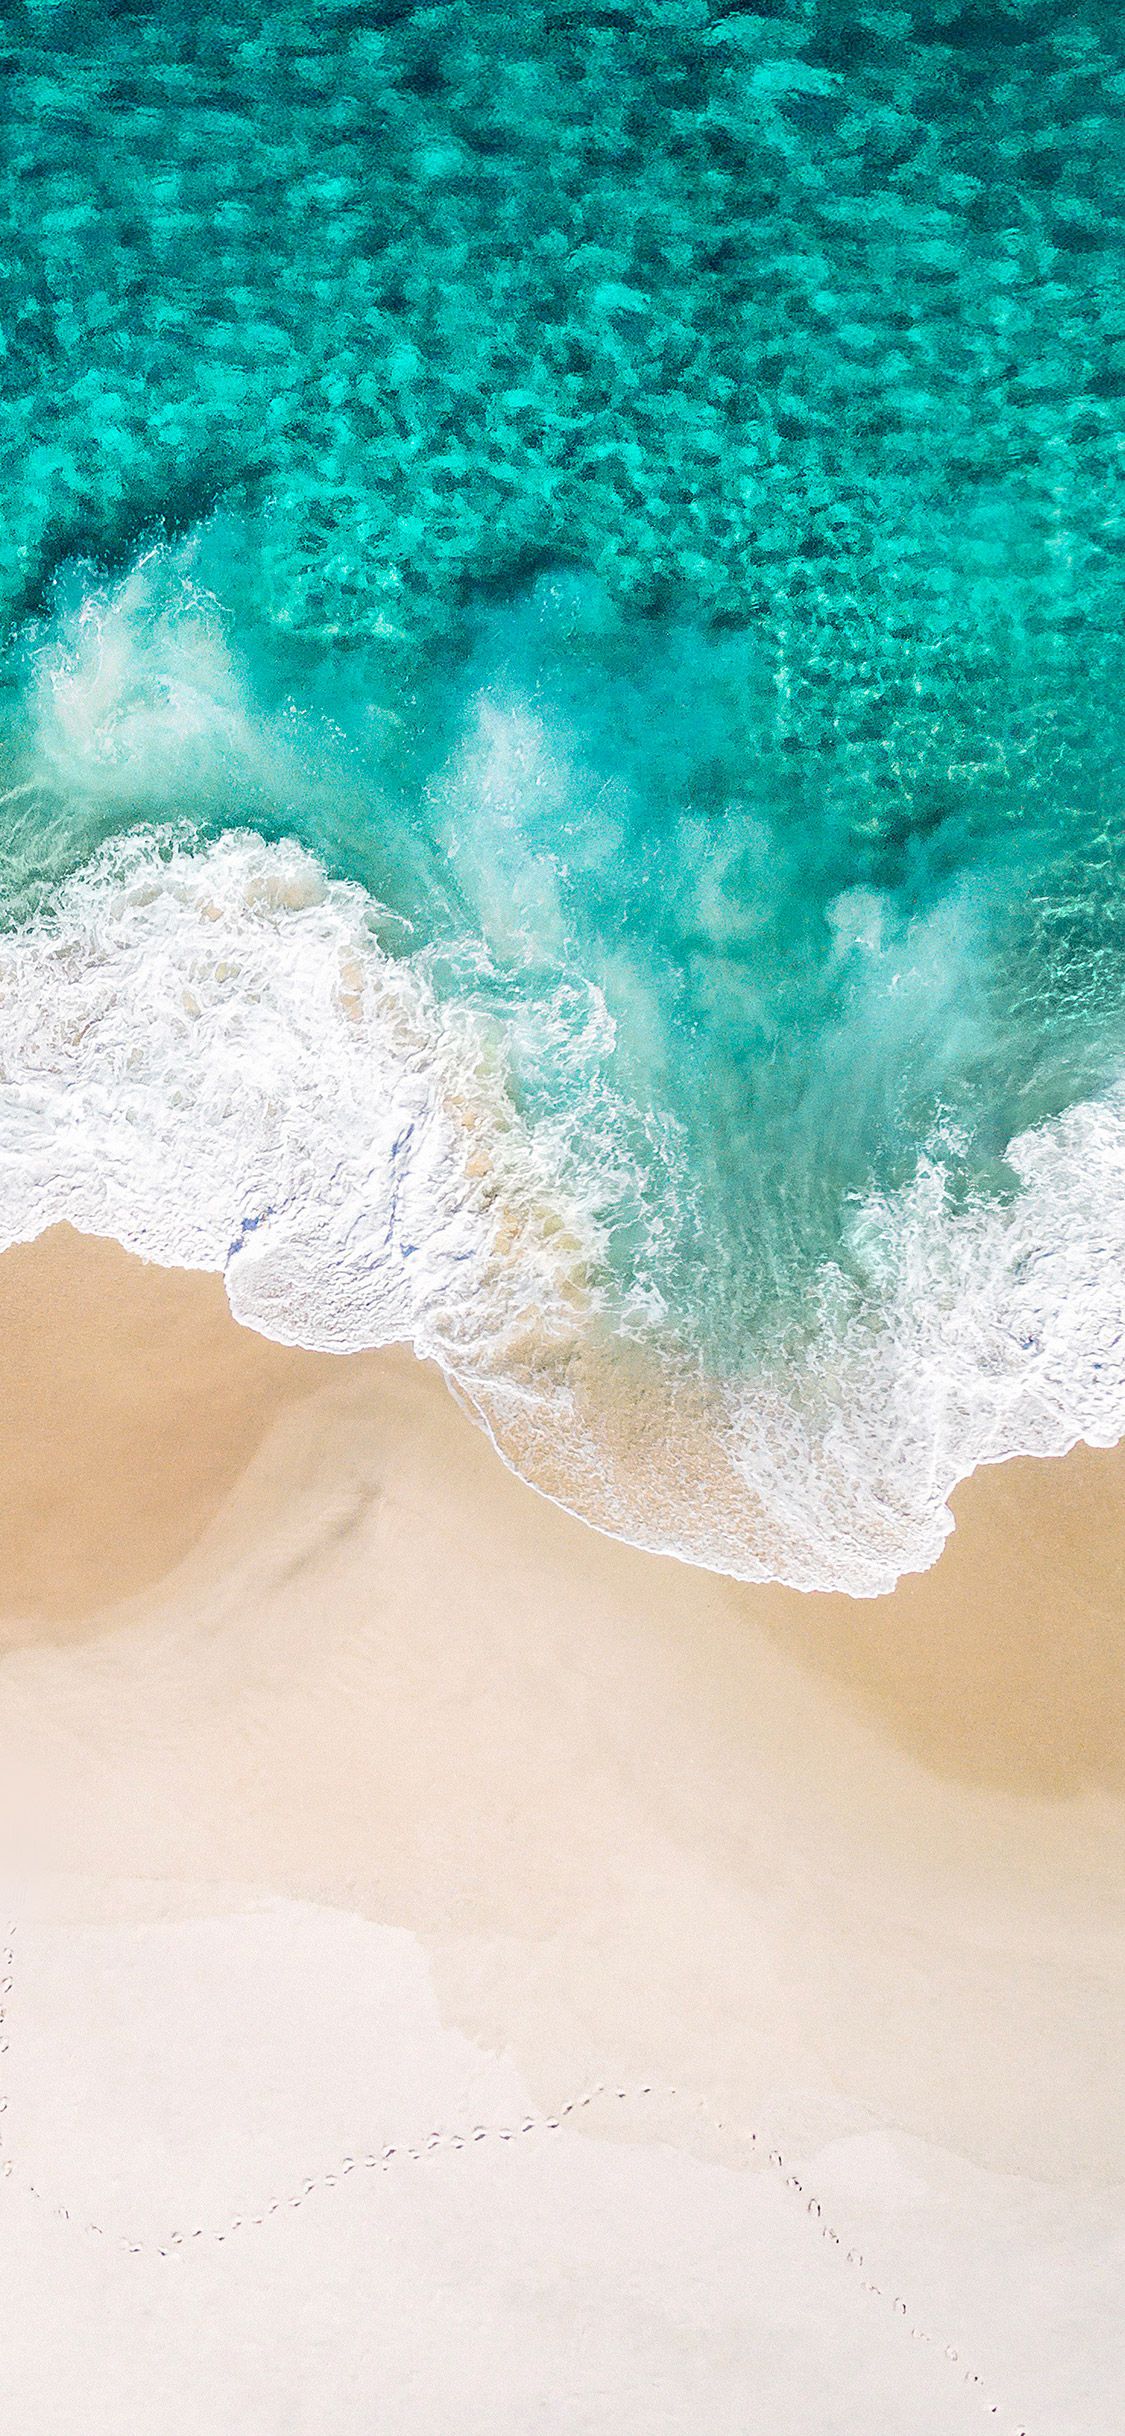 Muốn có một bức hình nền sóng biển xanh đẹp như trong tranh vẽ? Hãy tải về bức hình nền sóng biển xanh này và cảm nhận sự thanh thản từ những đợt sóng nổi lên.